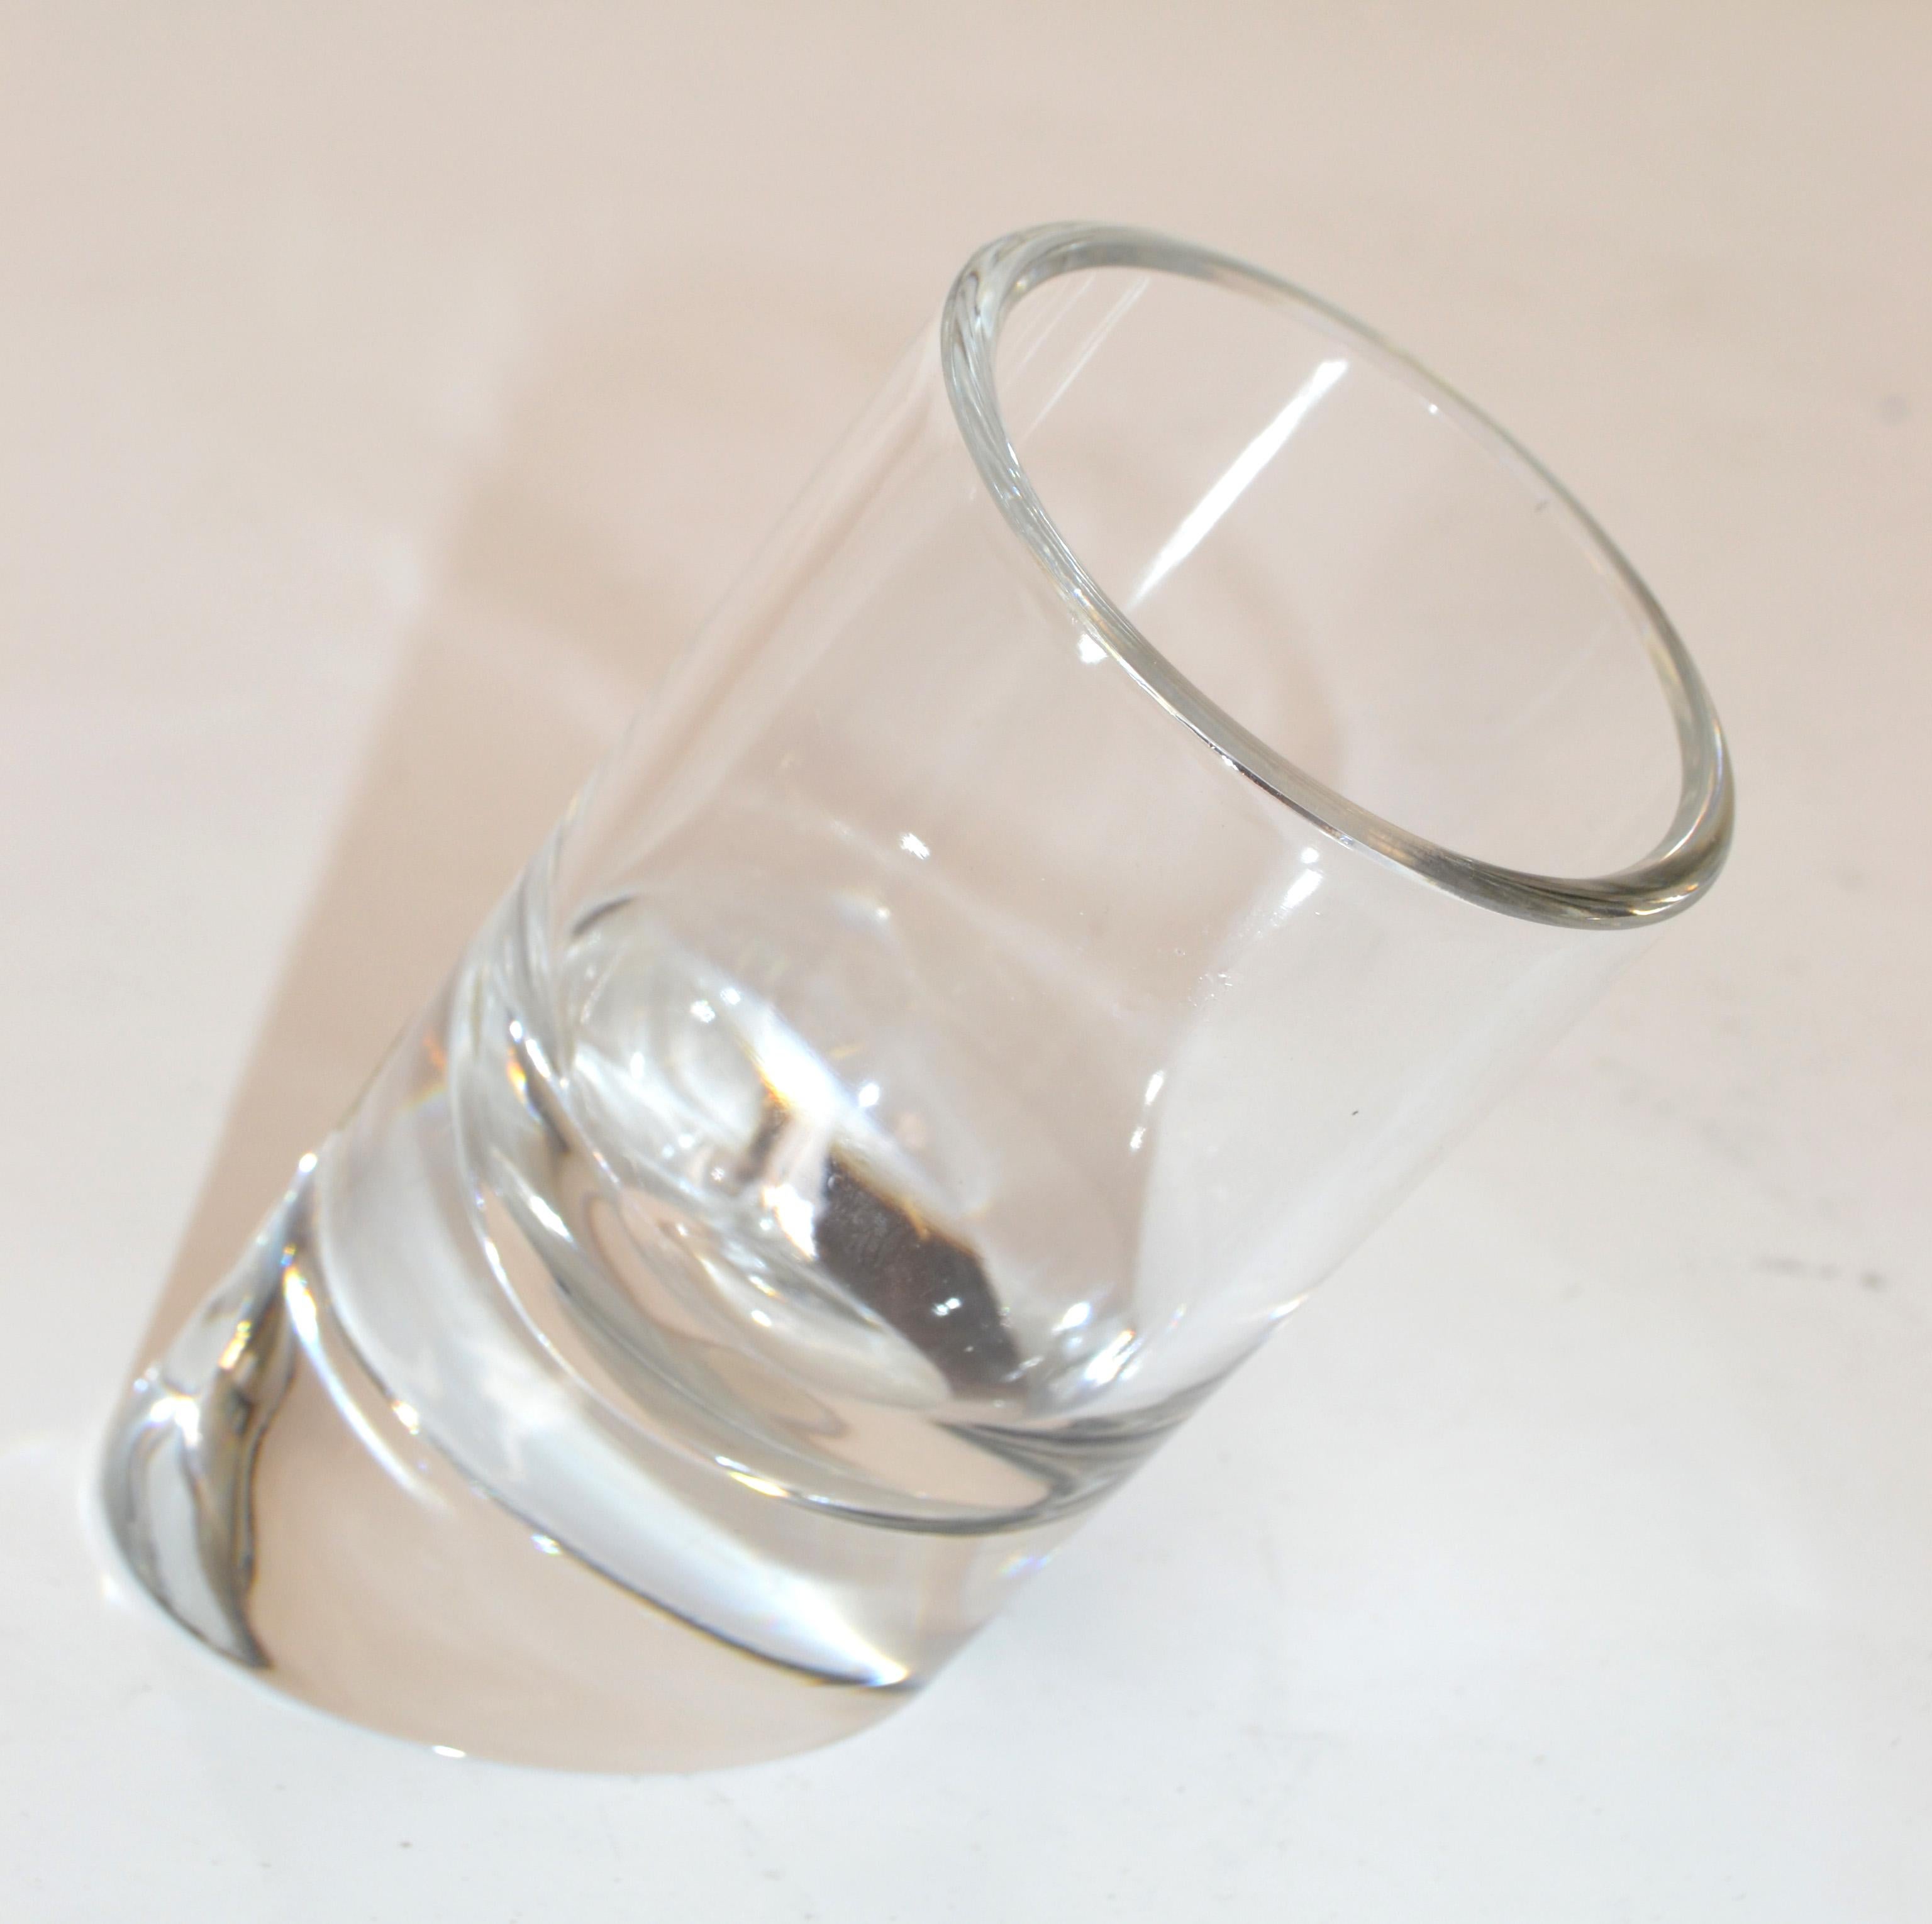 Auffällige original Rosenthal Space Age Bleikristall-Zylindervase, Gefäß mit schrägem Boden, made in Germany. 
Er sieht auf einer schwarzen Kredenz, einem Flurtisch oder einem Schreibtisch fantastisch aus.
Gezeichnet mit Goldfolie Label Rosenthal